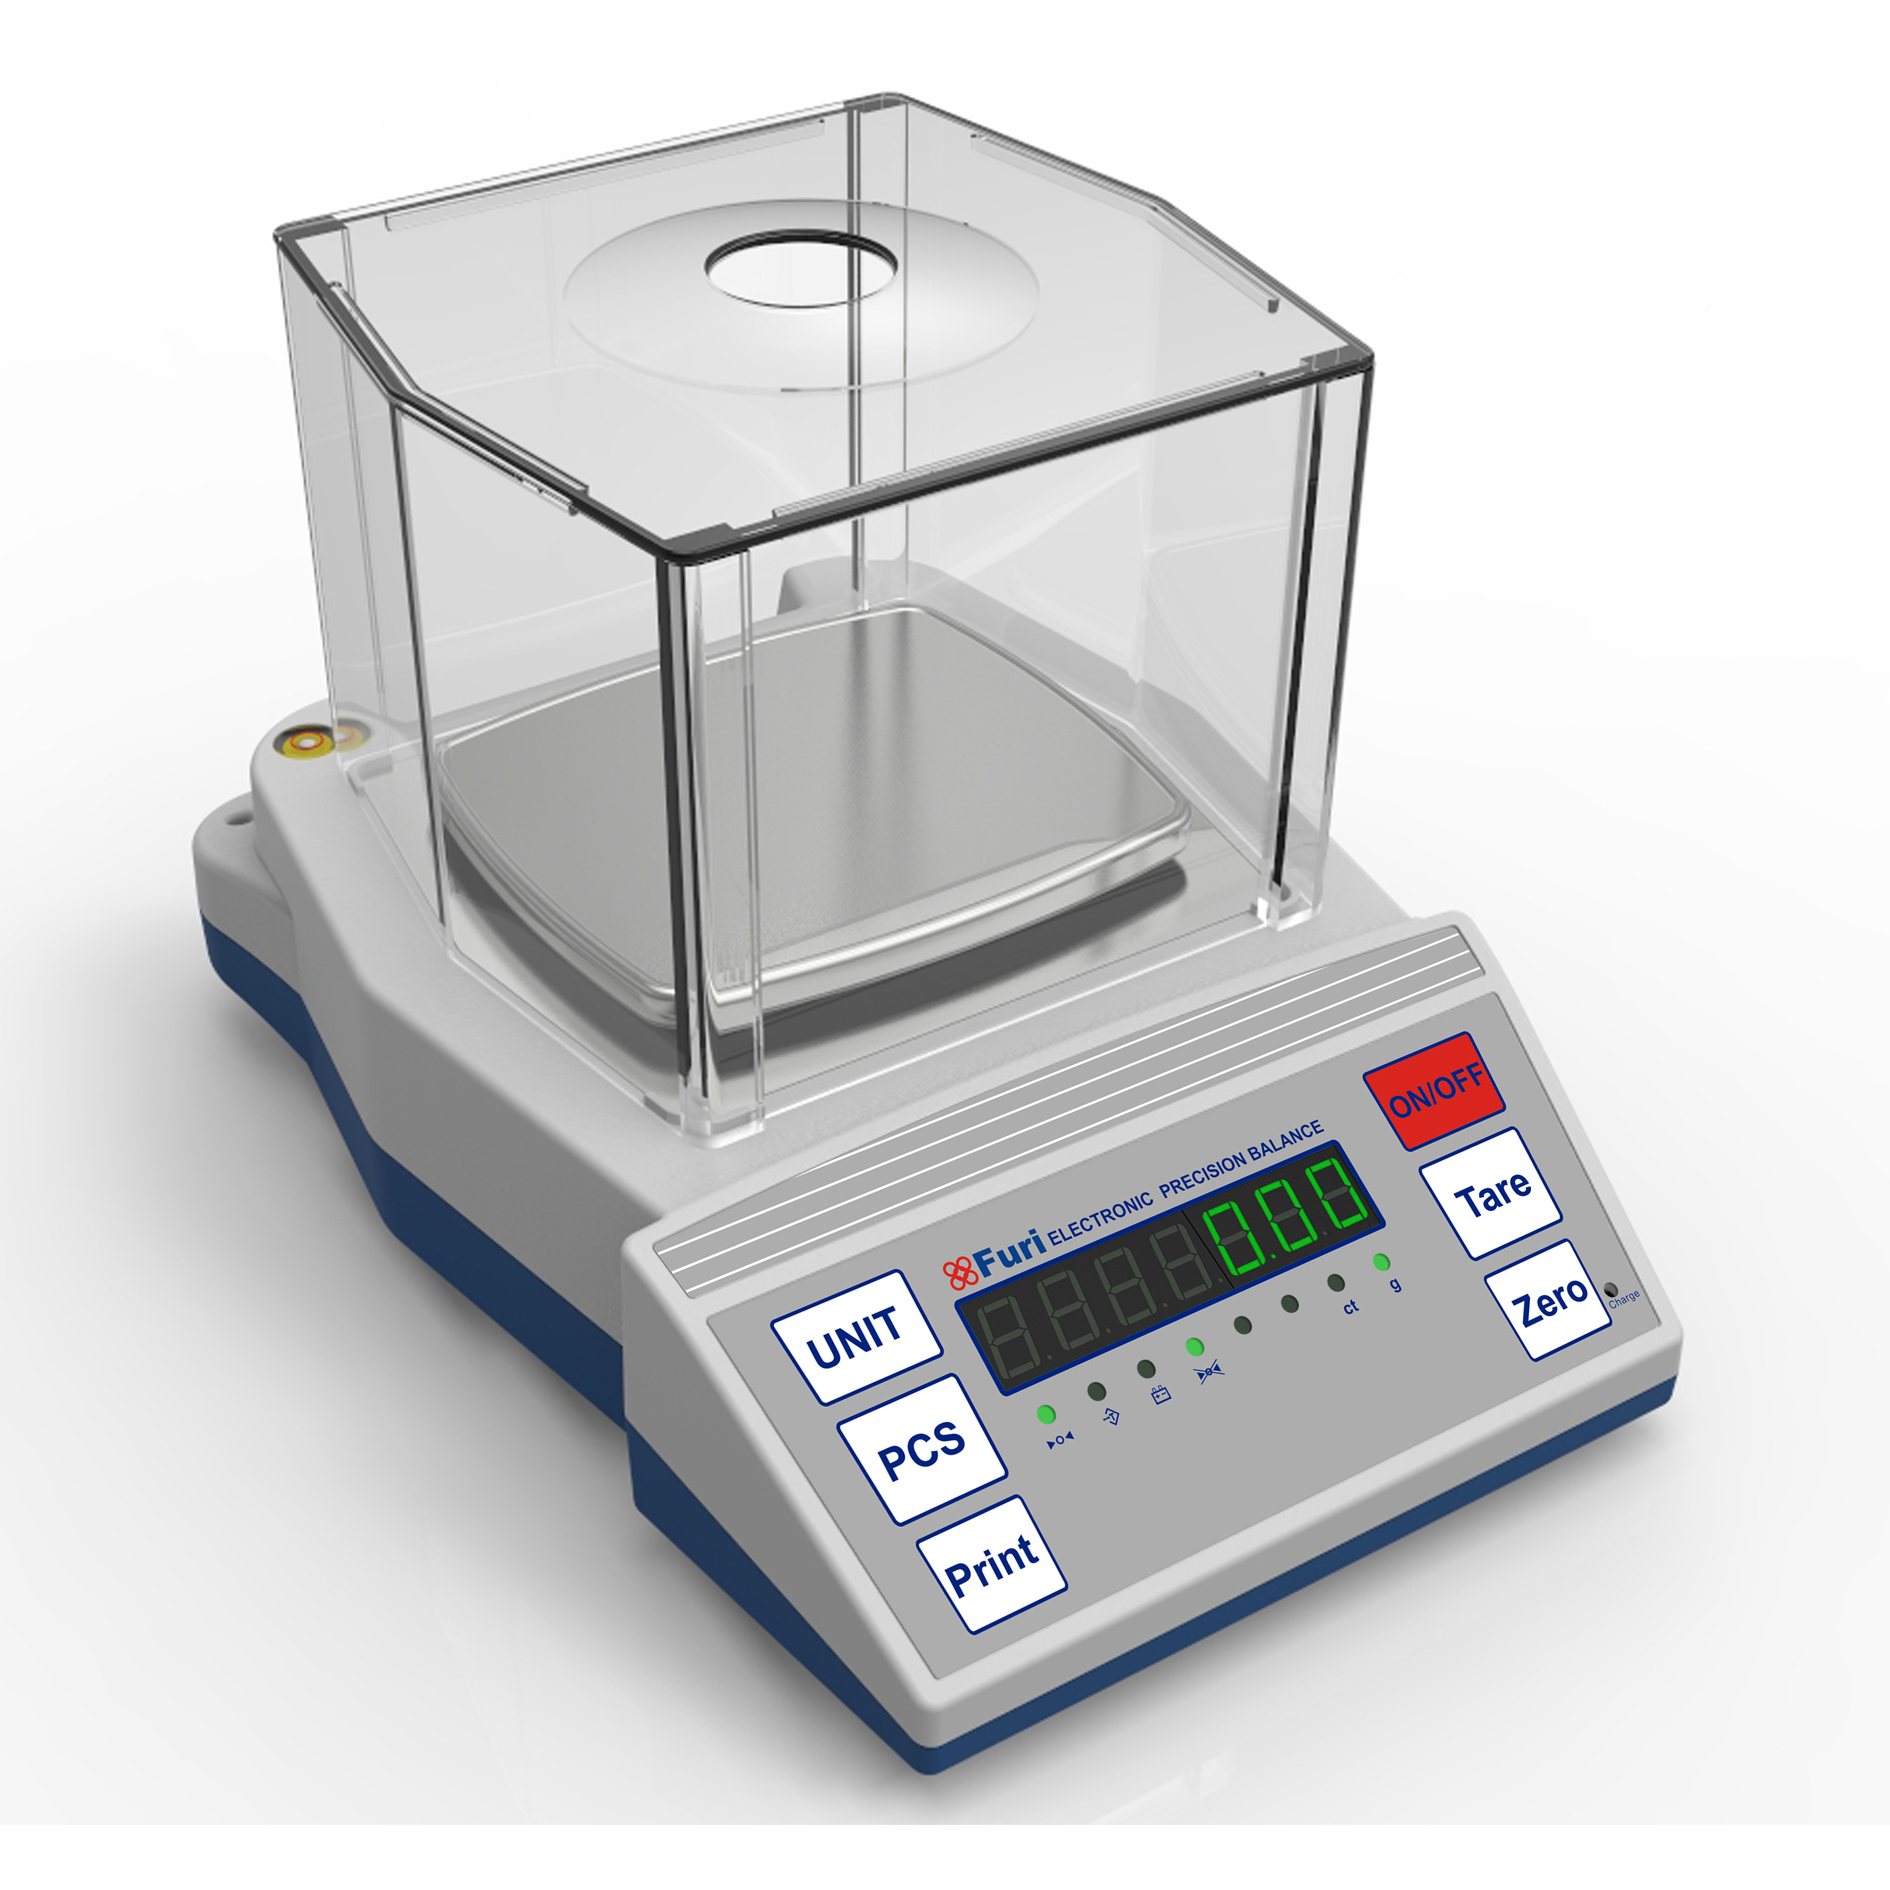 FHB Premium Analytical Laboratory Digital Weighing Balance Machine 